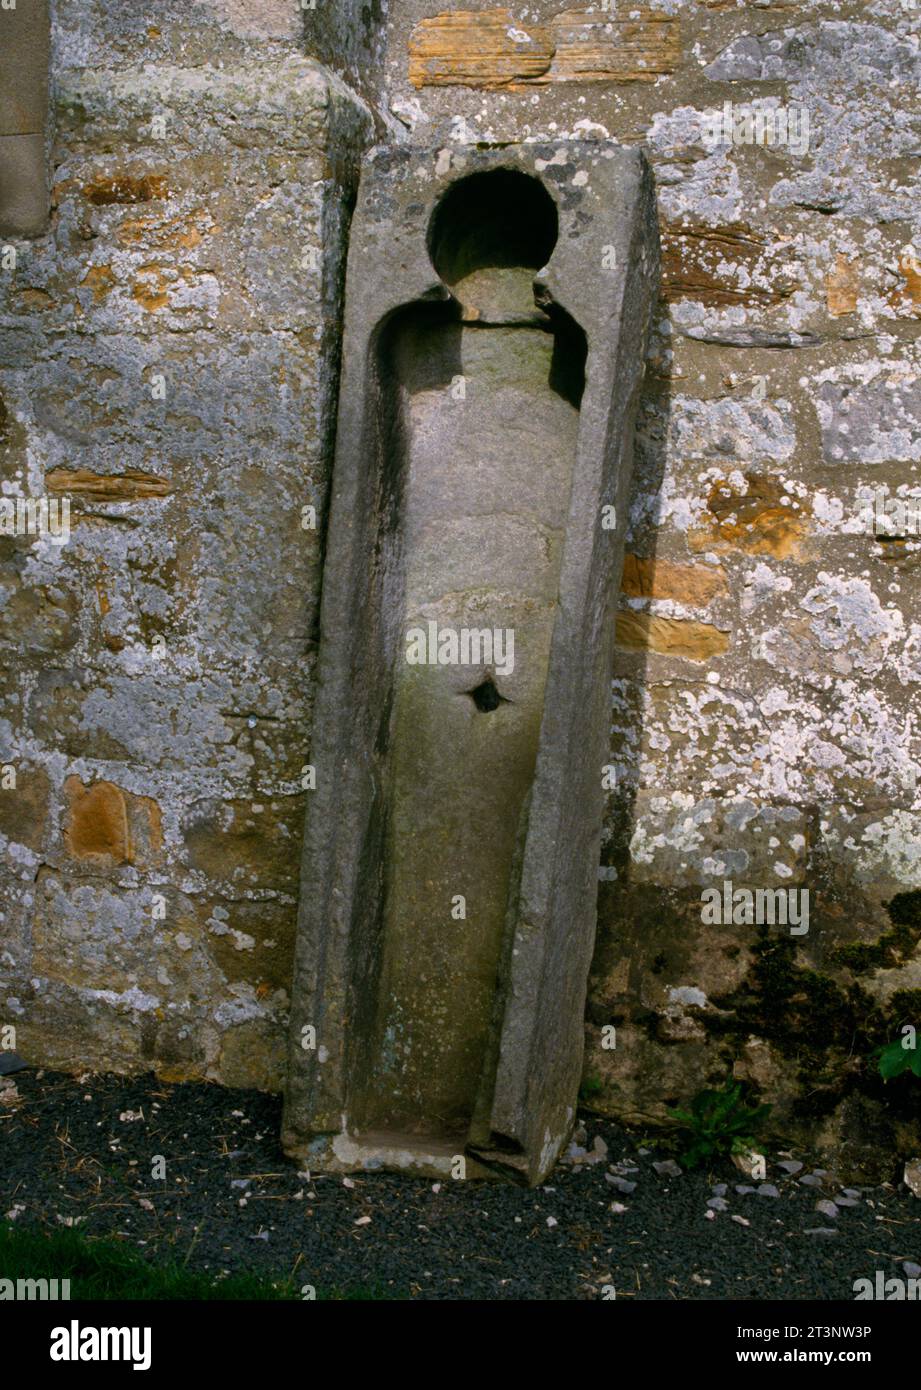 Der südliche von zwei mittelalterlichen Steinsärgen, die an der westlichen Außenwand der St Cuthbert’s Church in Elsdon, Northumberland, England, Großbritannien, anlehnen. Stockfoto